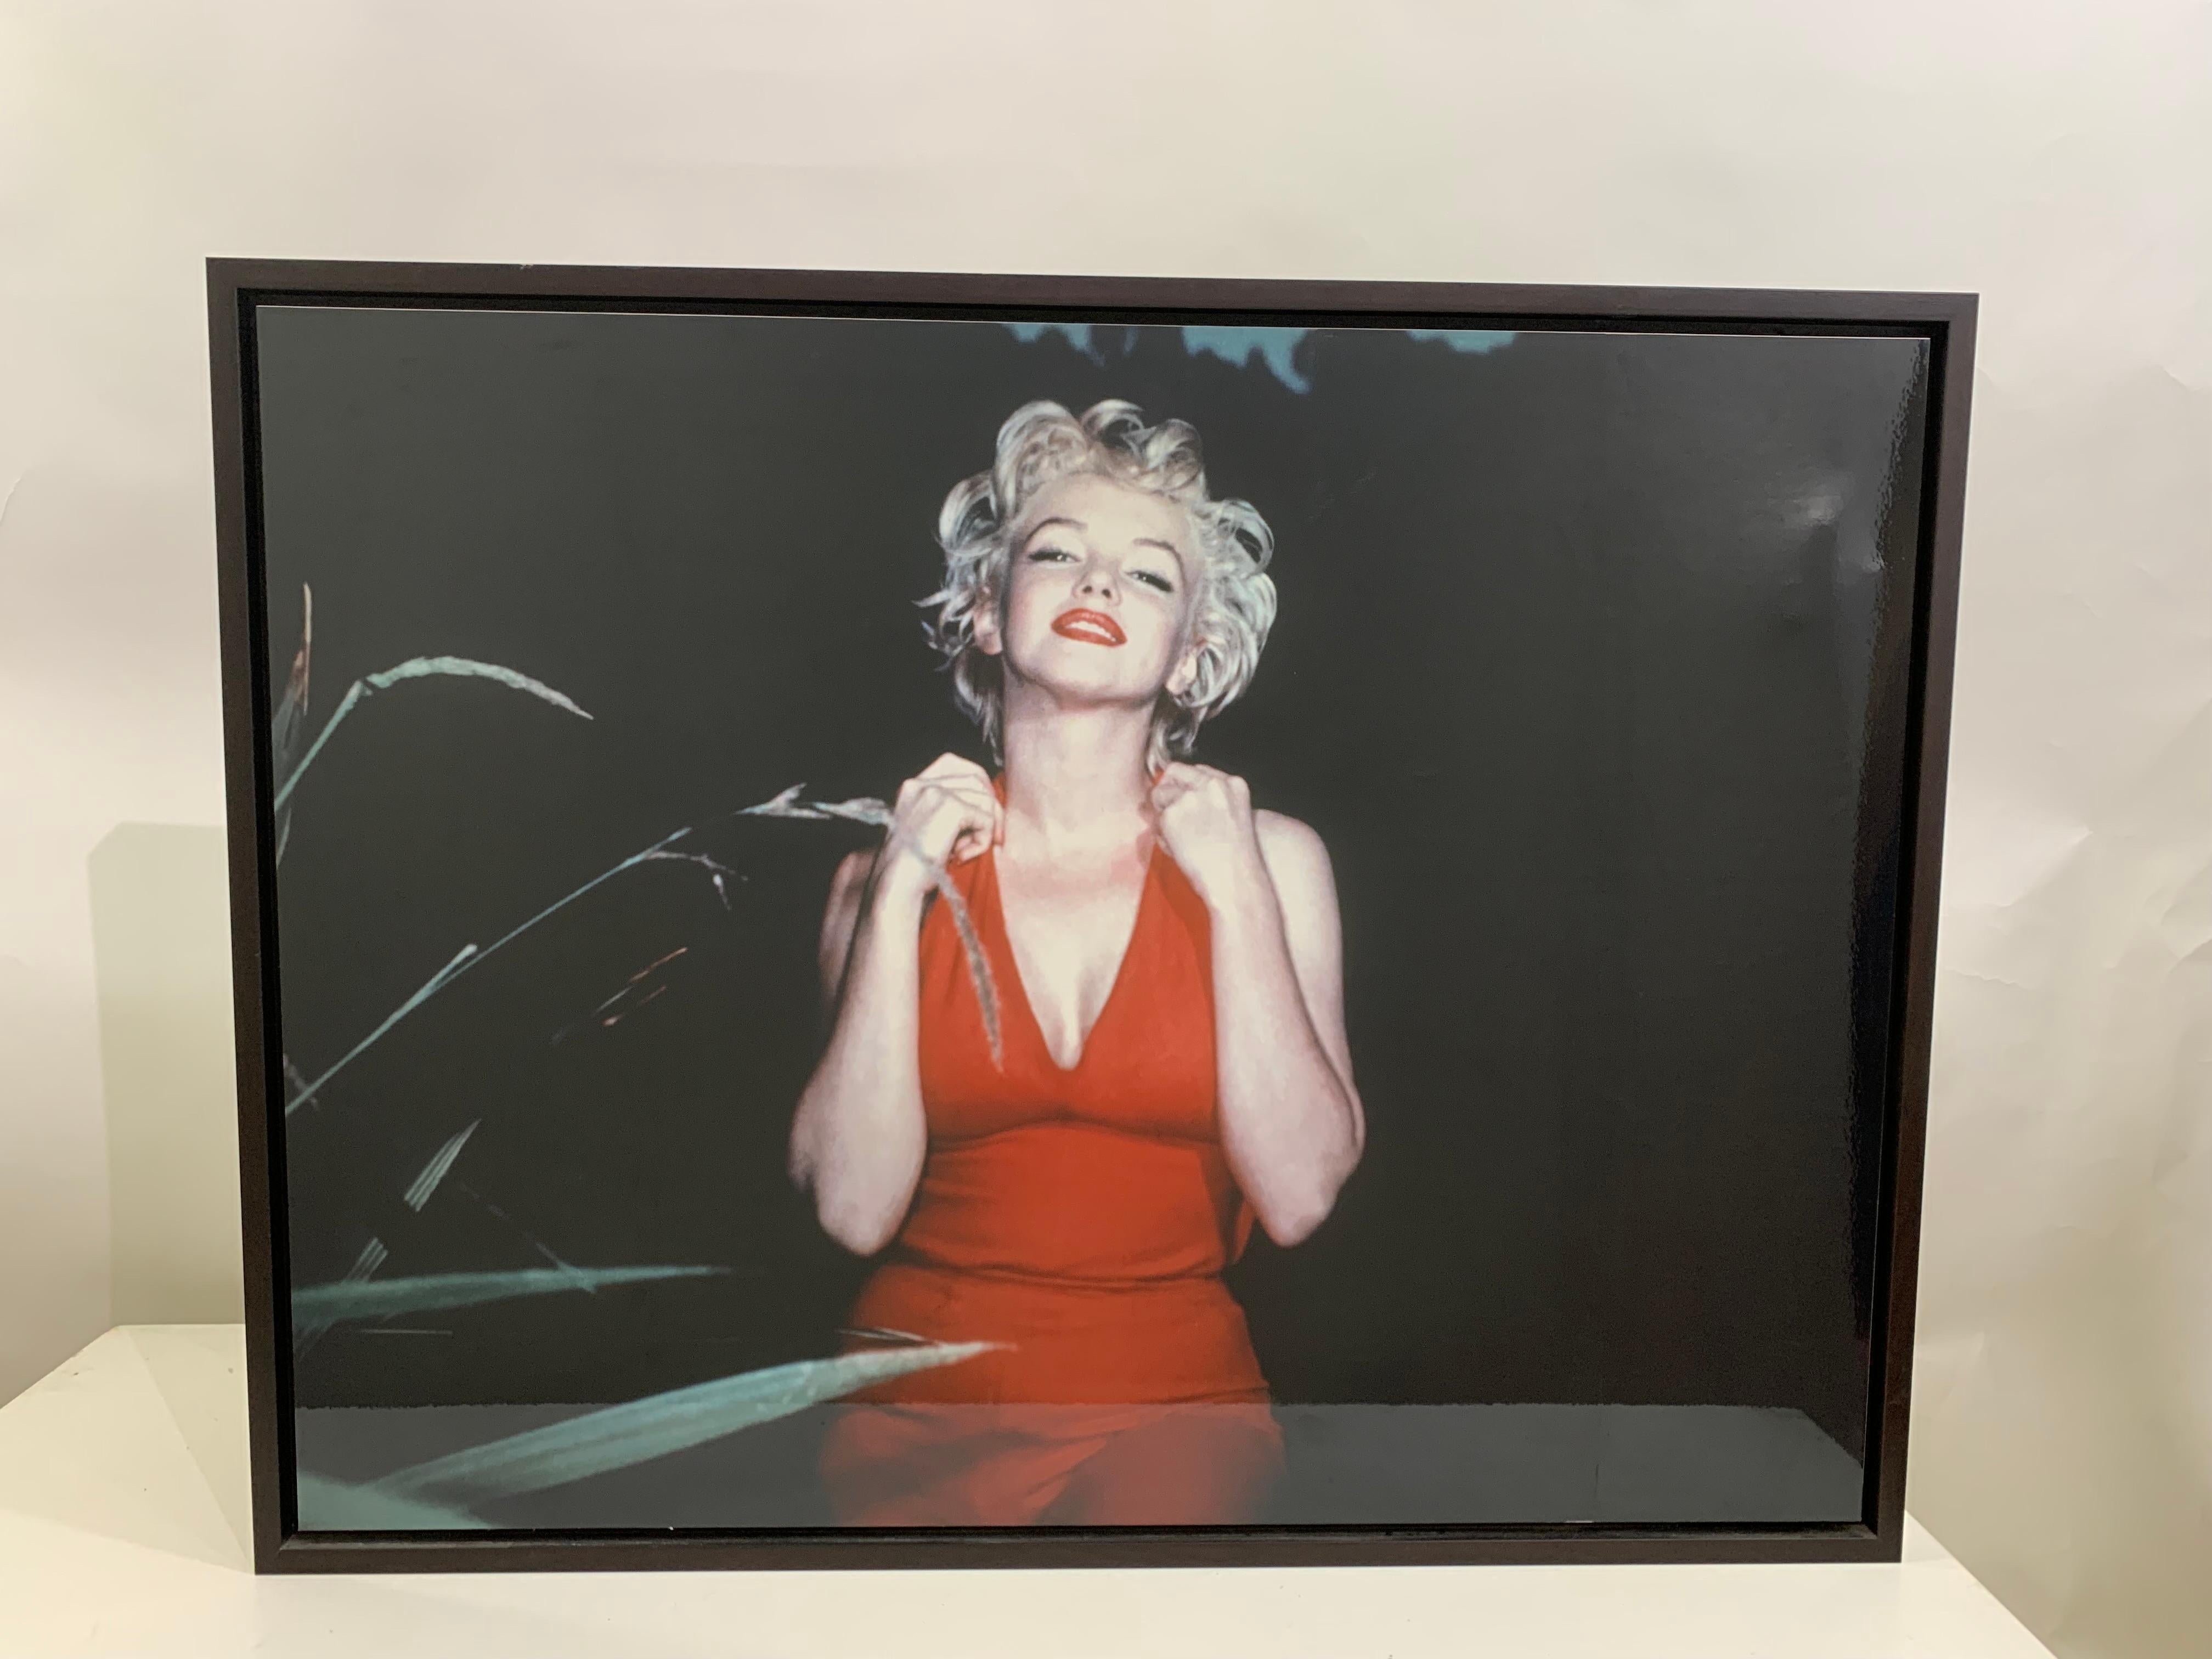 Lumas gerahmtes Foto von Marilyn Monroe. Amerikanische Schauspielerin, die in den 1950er Jahren in einer Reihe von kommerziell erfolgreichen Filmen mitwirkte und als Ikone der Popkultur gilt.
Foto aufgenommen von: Baron, 1954
Fotografie Größe: 86,5